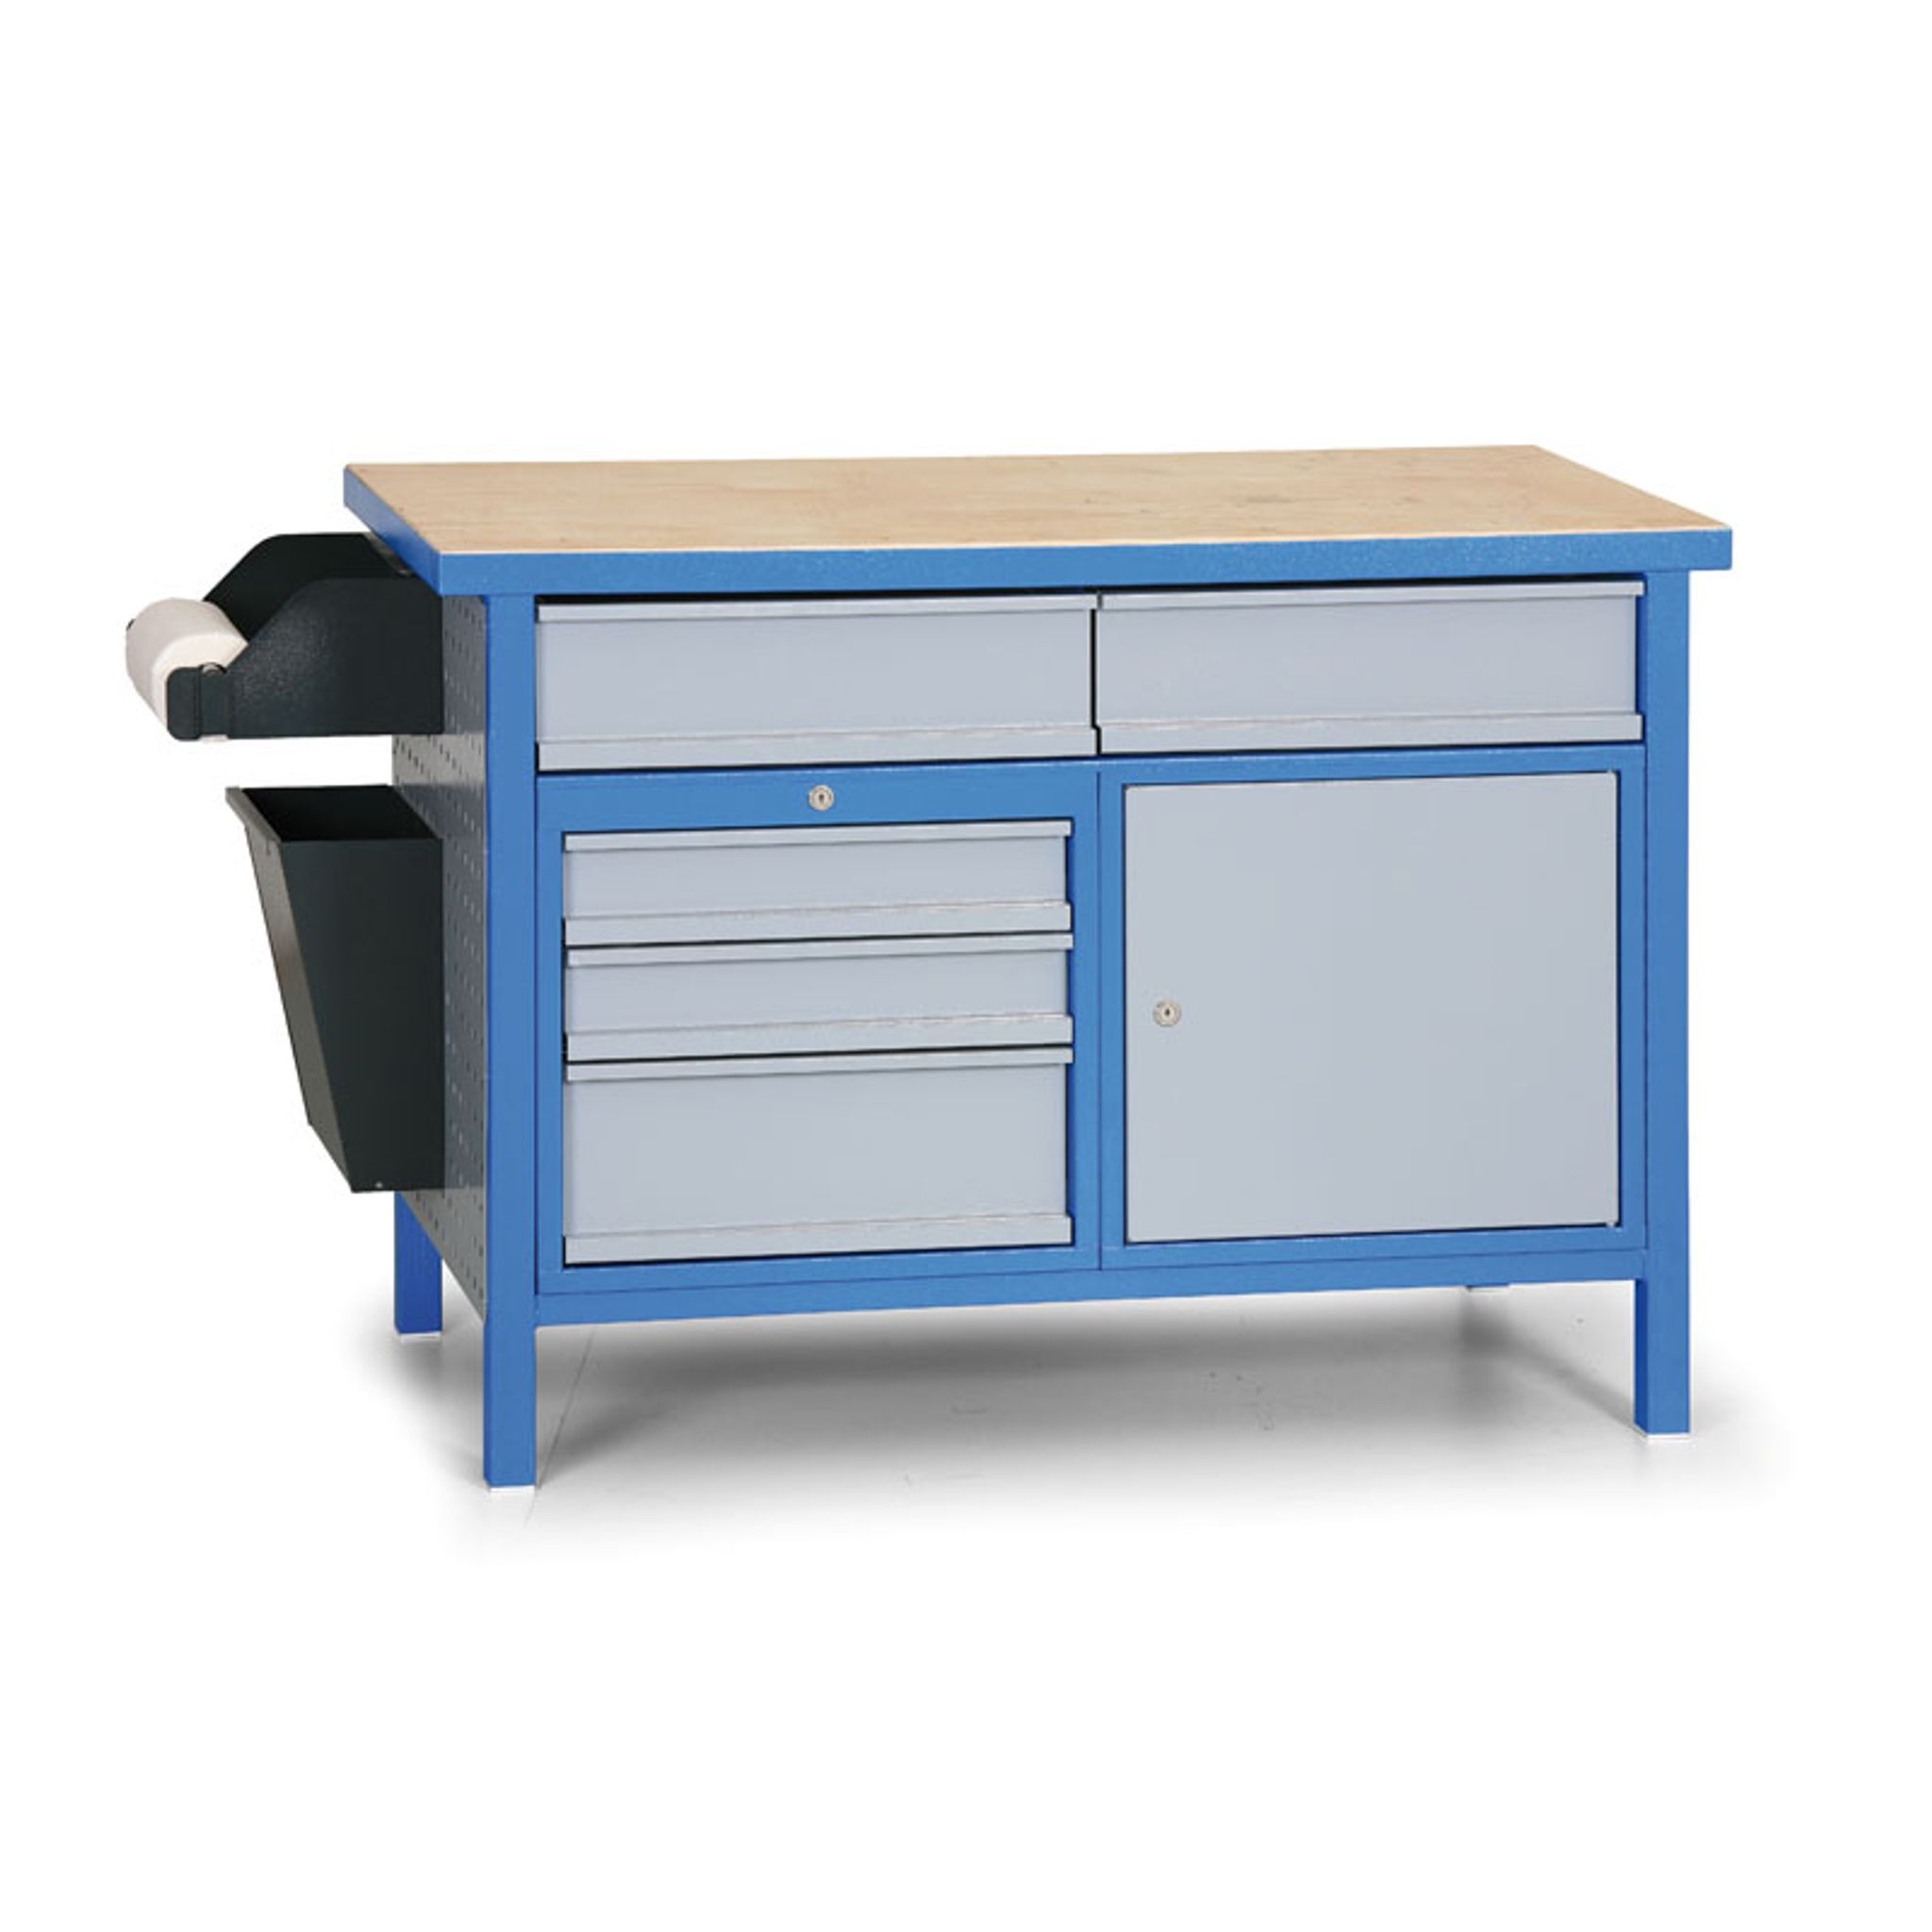 Stół warsztatowy GÜDE Basic, 5 szuflad, 1 szafka, 1190 x 600 x 850 mm, niebiesko-szary